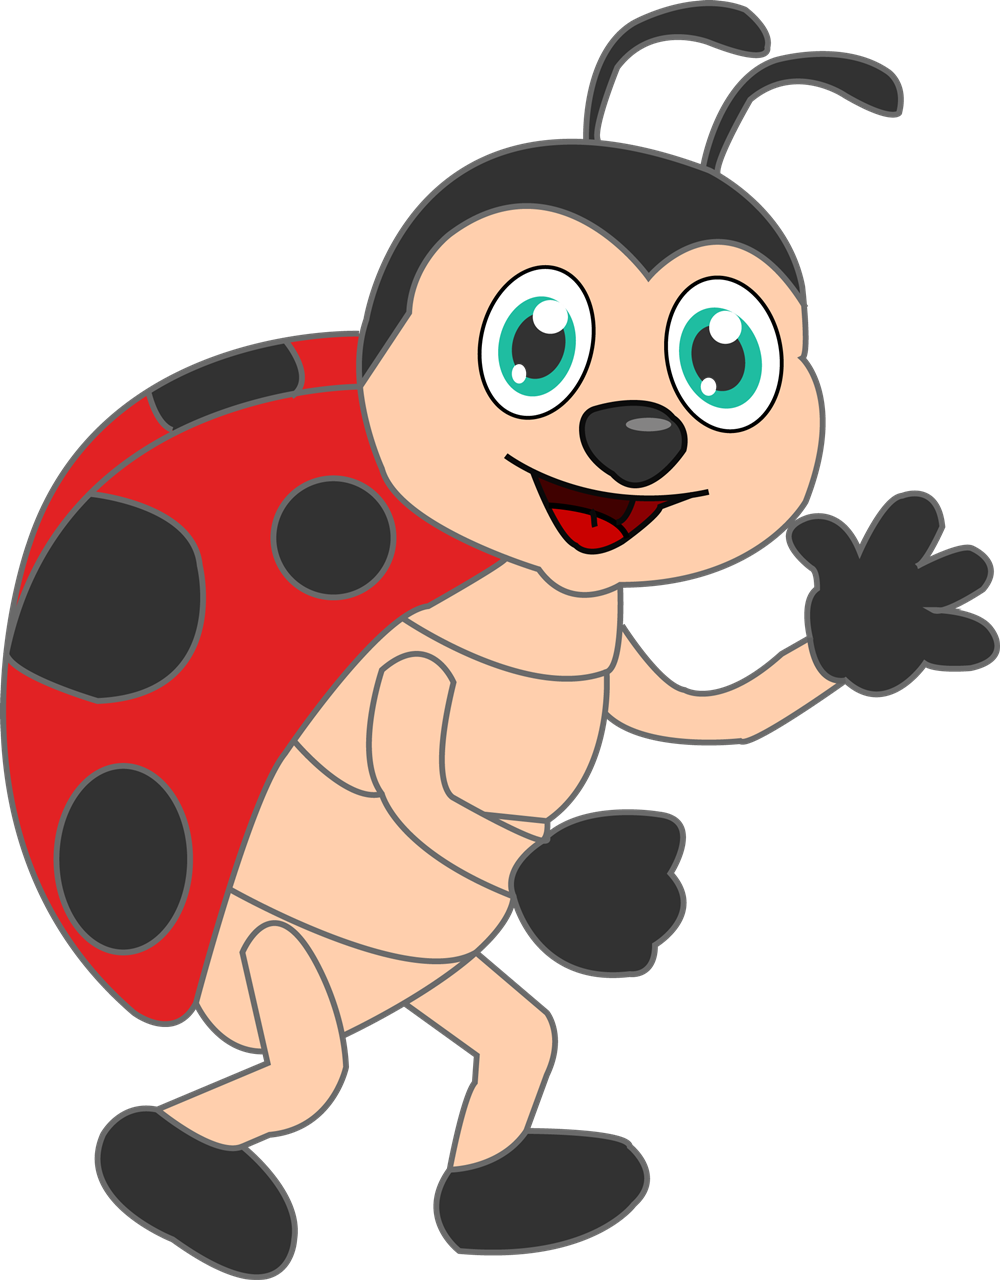 Ladybug Clip Art 5, Ladybug C